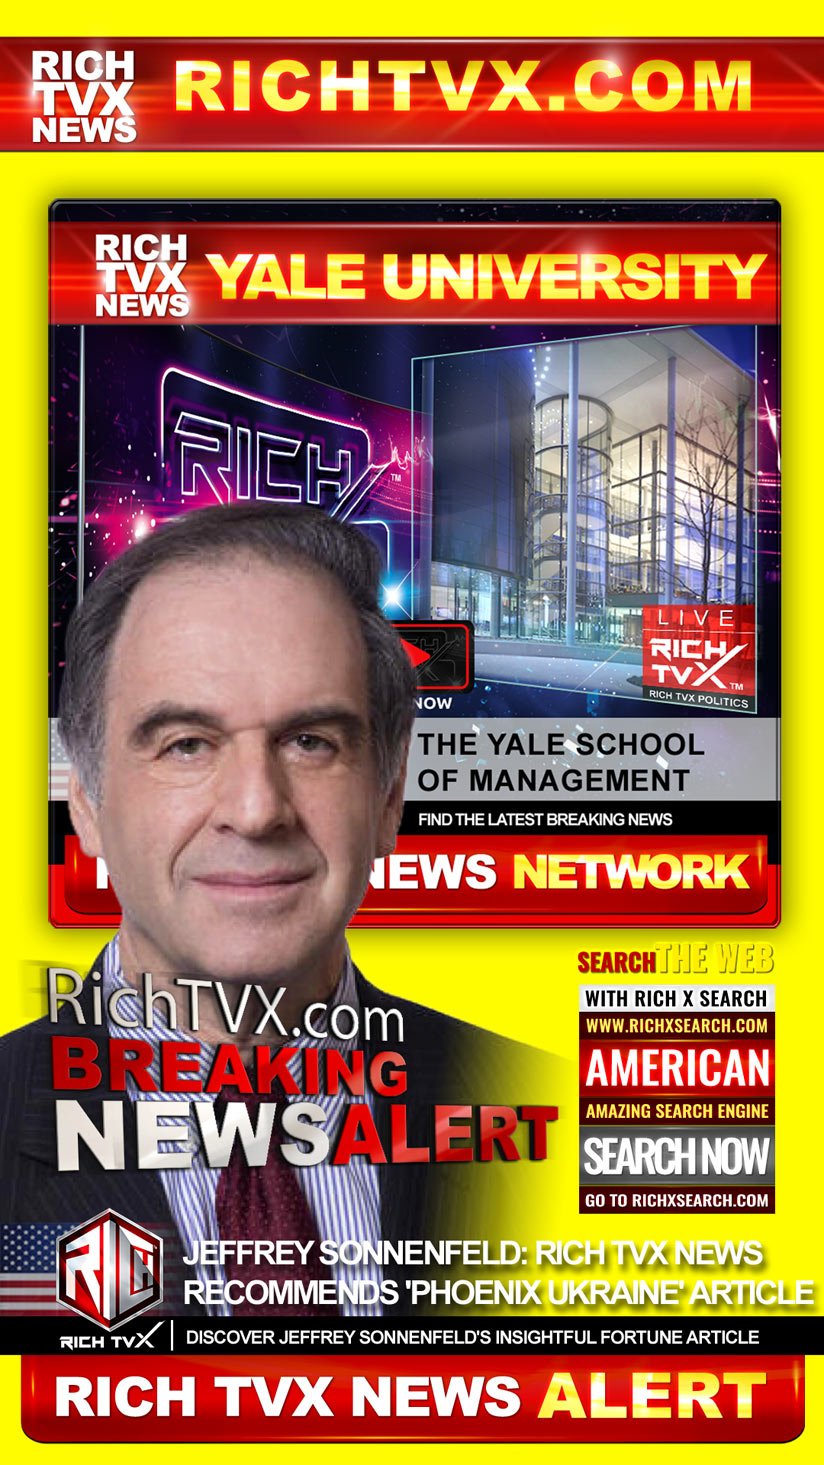 Jeffrey Sonnenfeld: Rich TVX News Recommends ‘Phoenix Ukraine’ Article